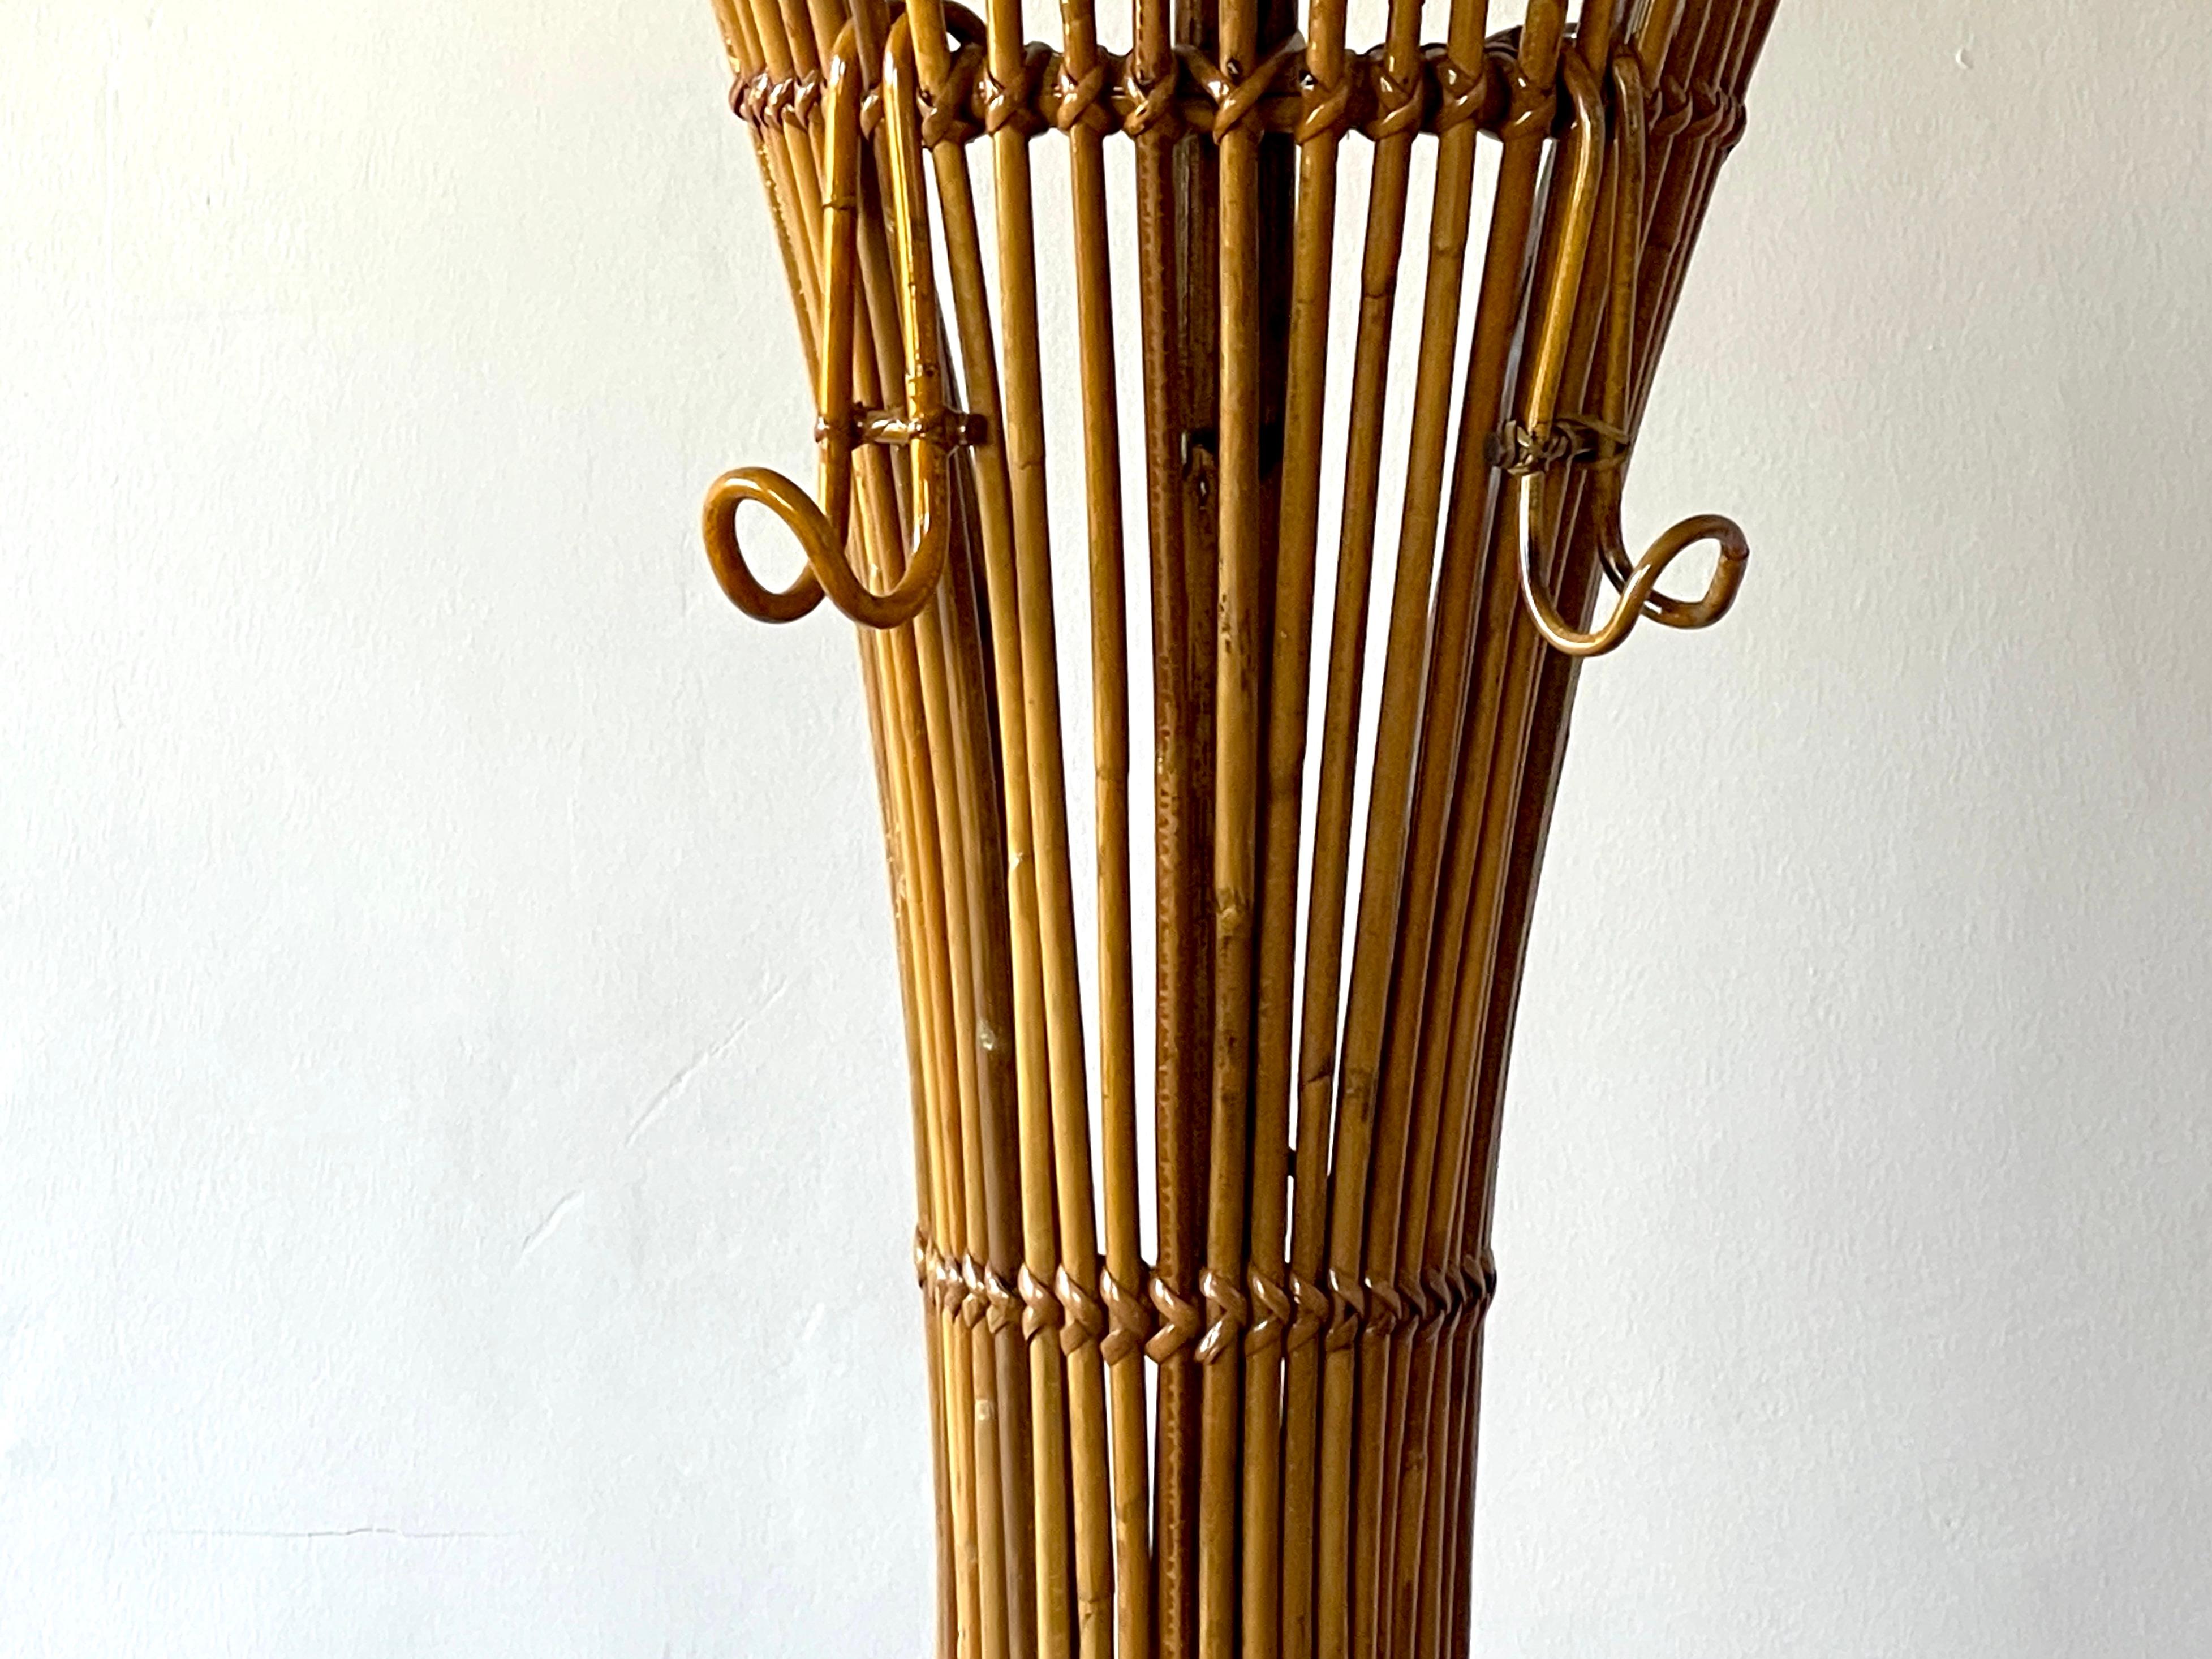 Bamboo Sculptural Tito Agnoli Coatrack For Sale